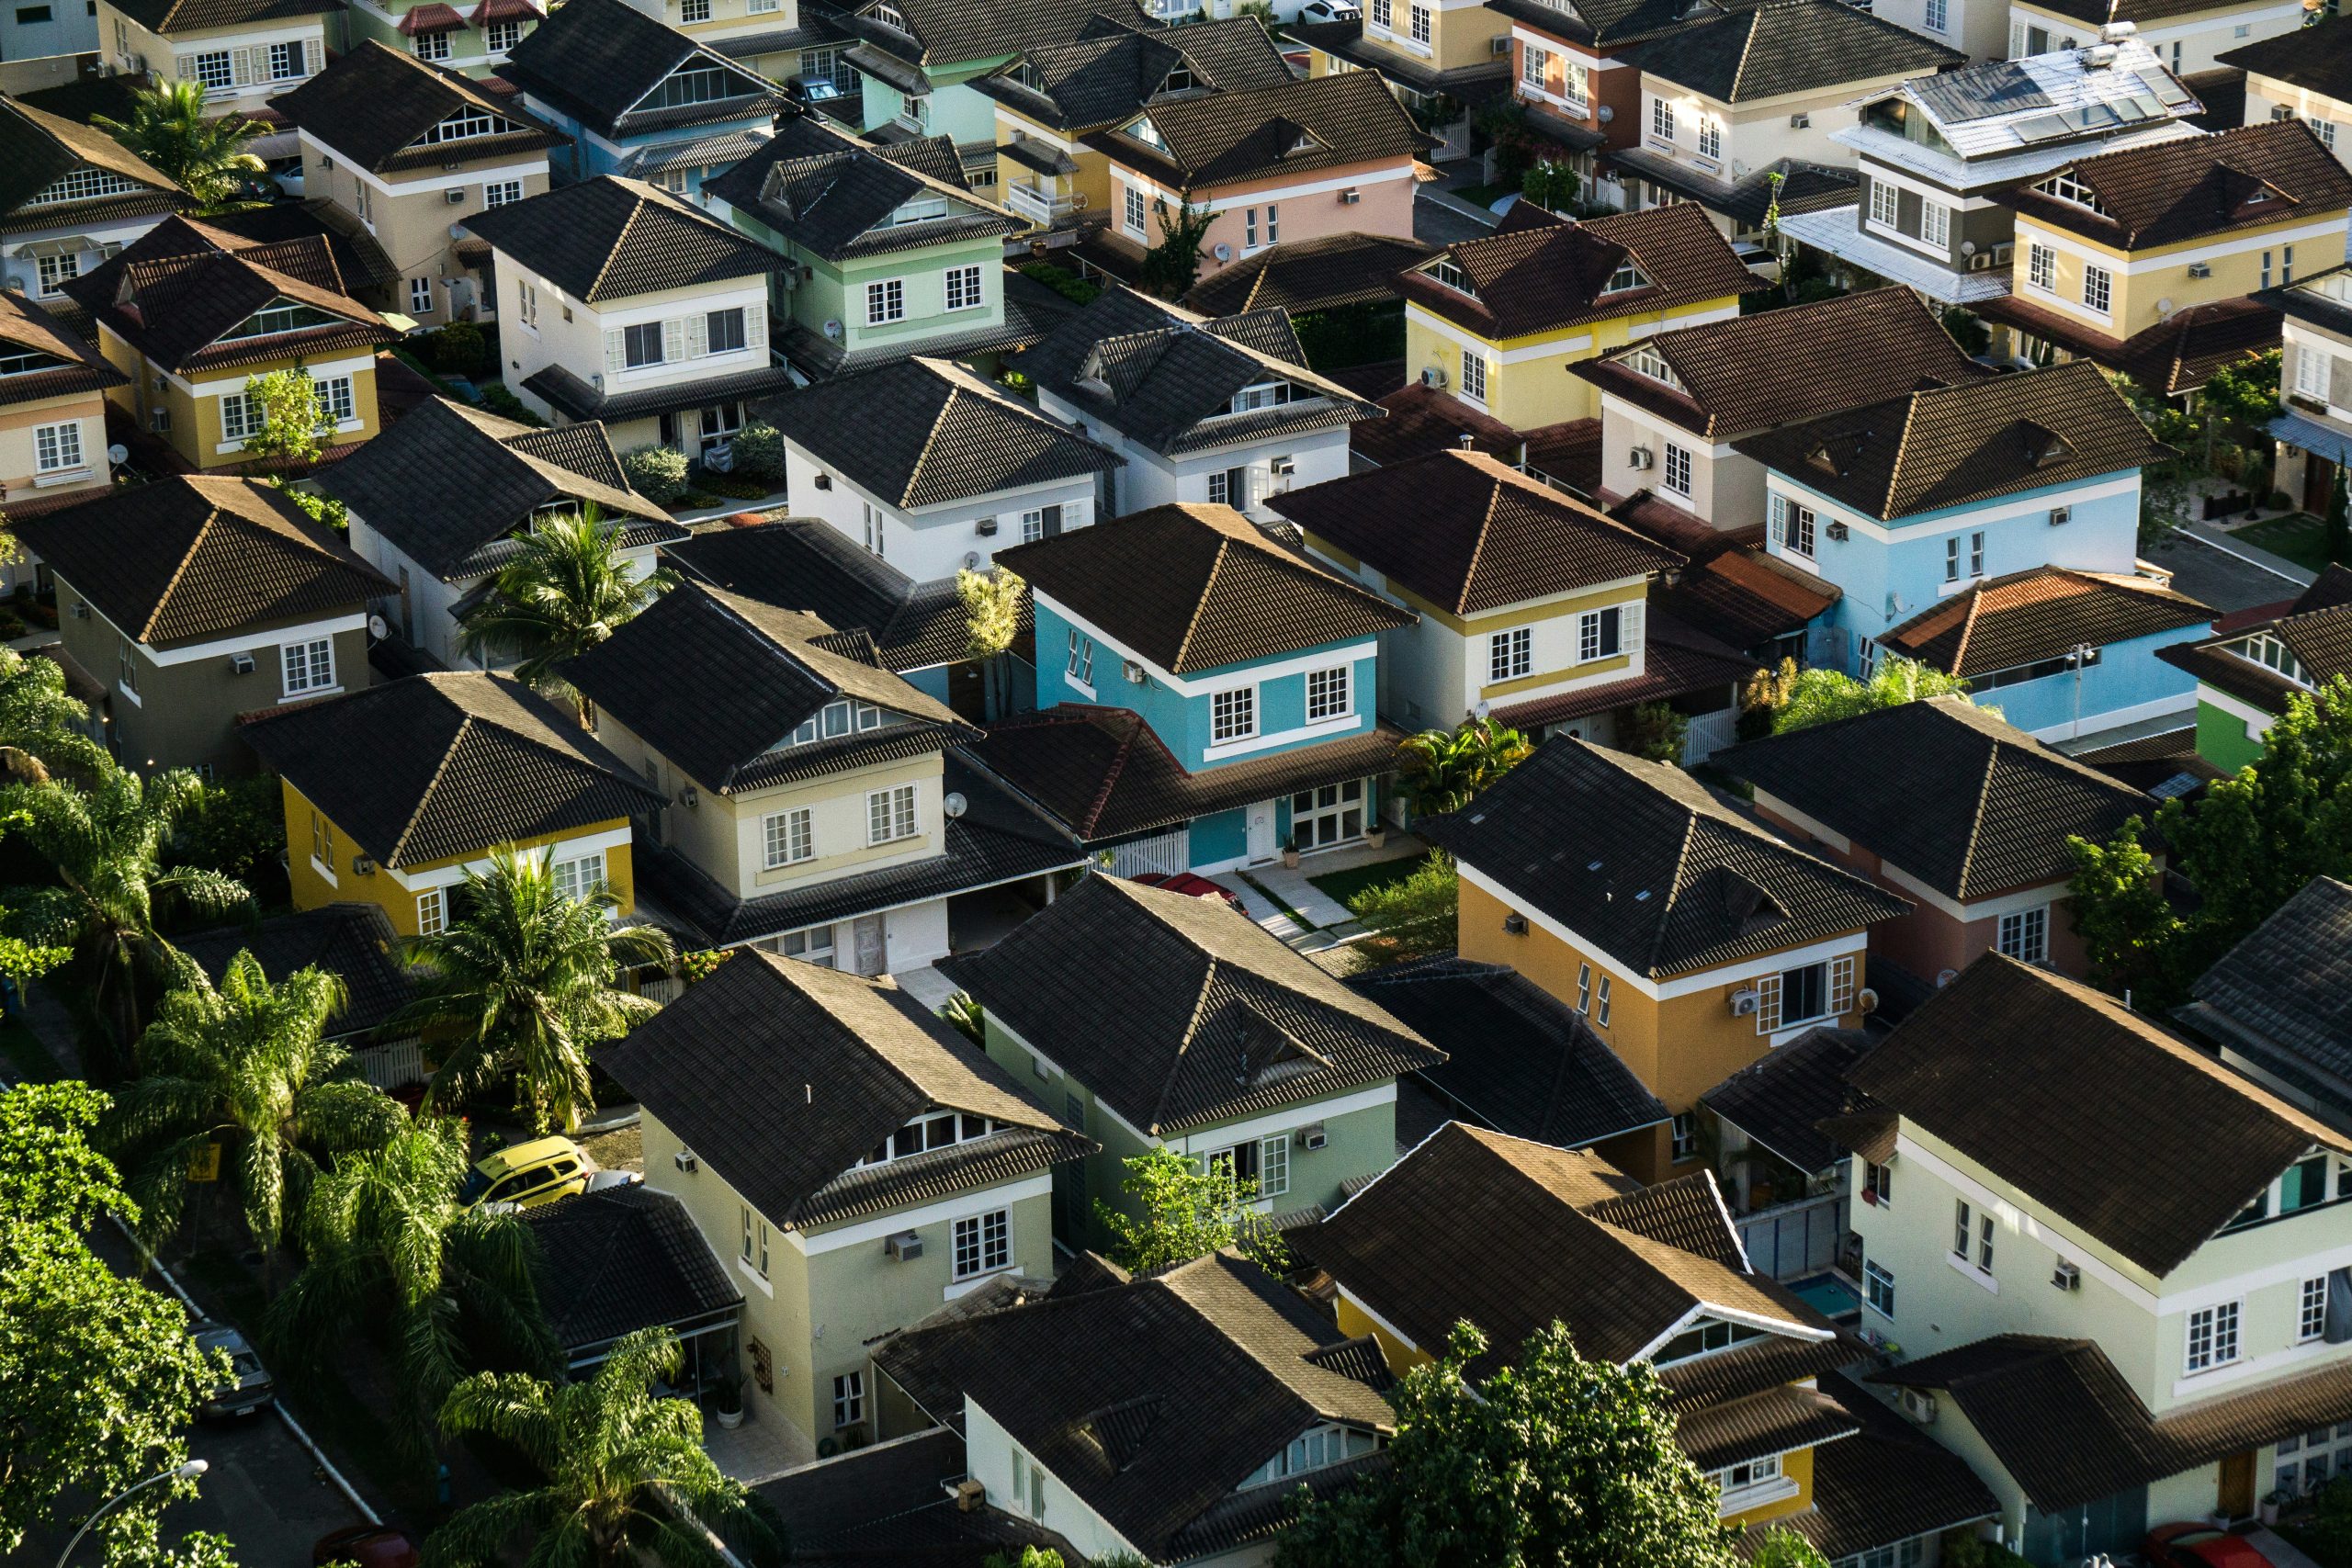 investissement immobilier fractionné : découvrez une nouvelle façon d'investir dans l'immobilier en fractionnant la propriété. profitez des avantages de l'investissement immobilier sans avoir à acheter une propriété complète.